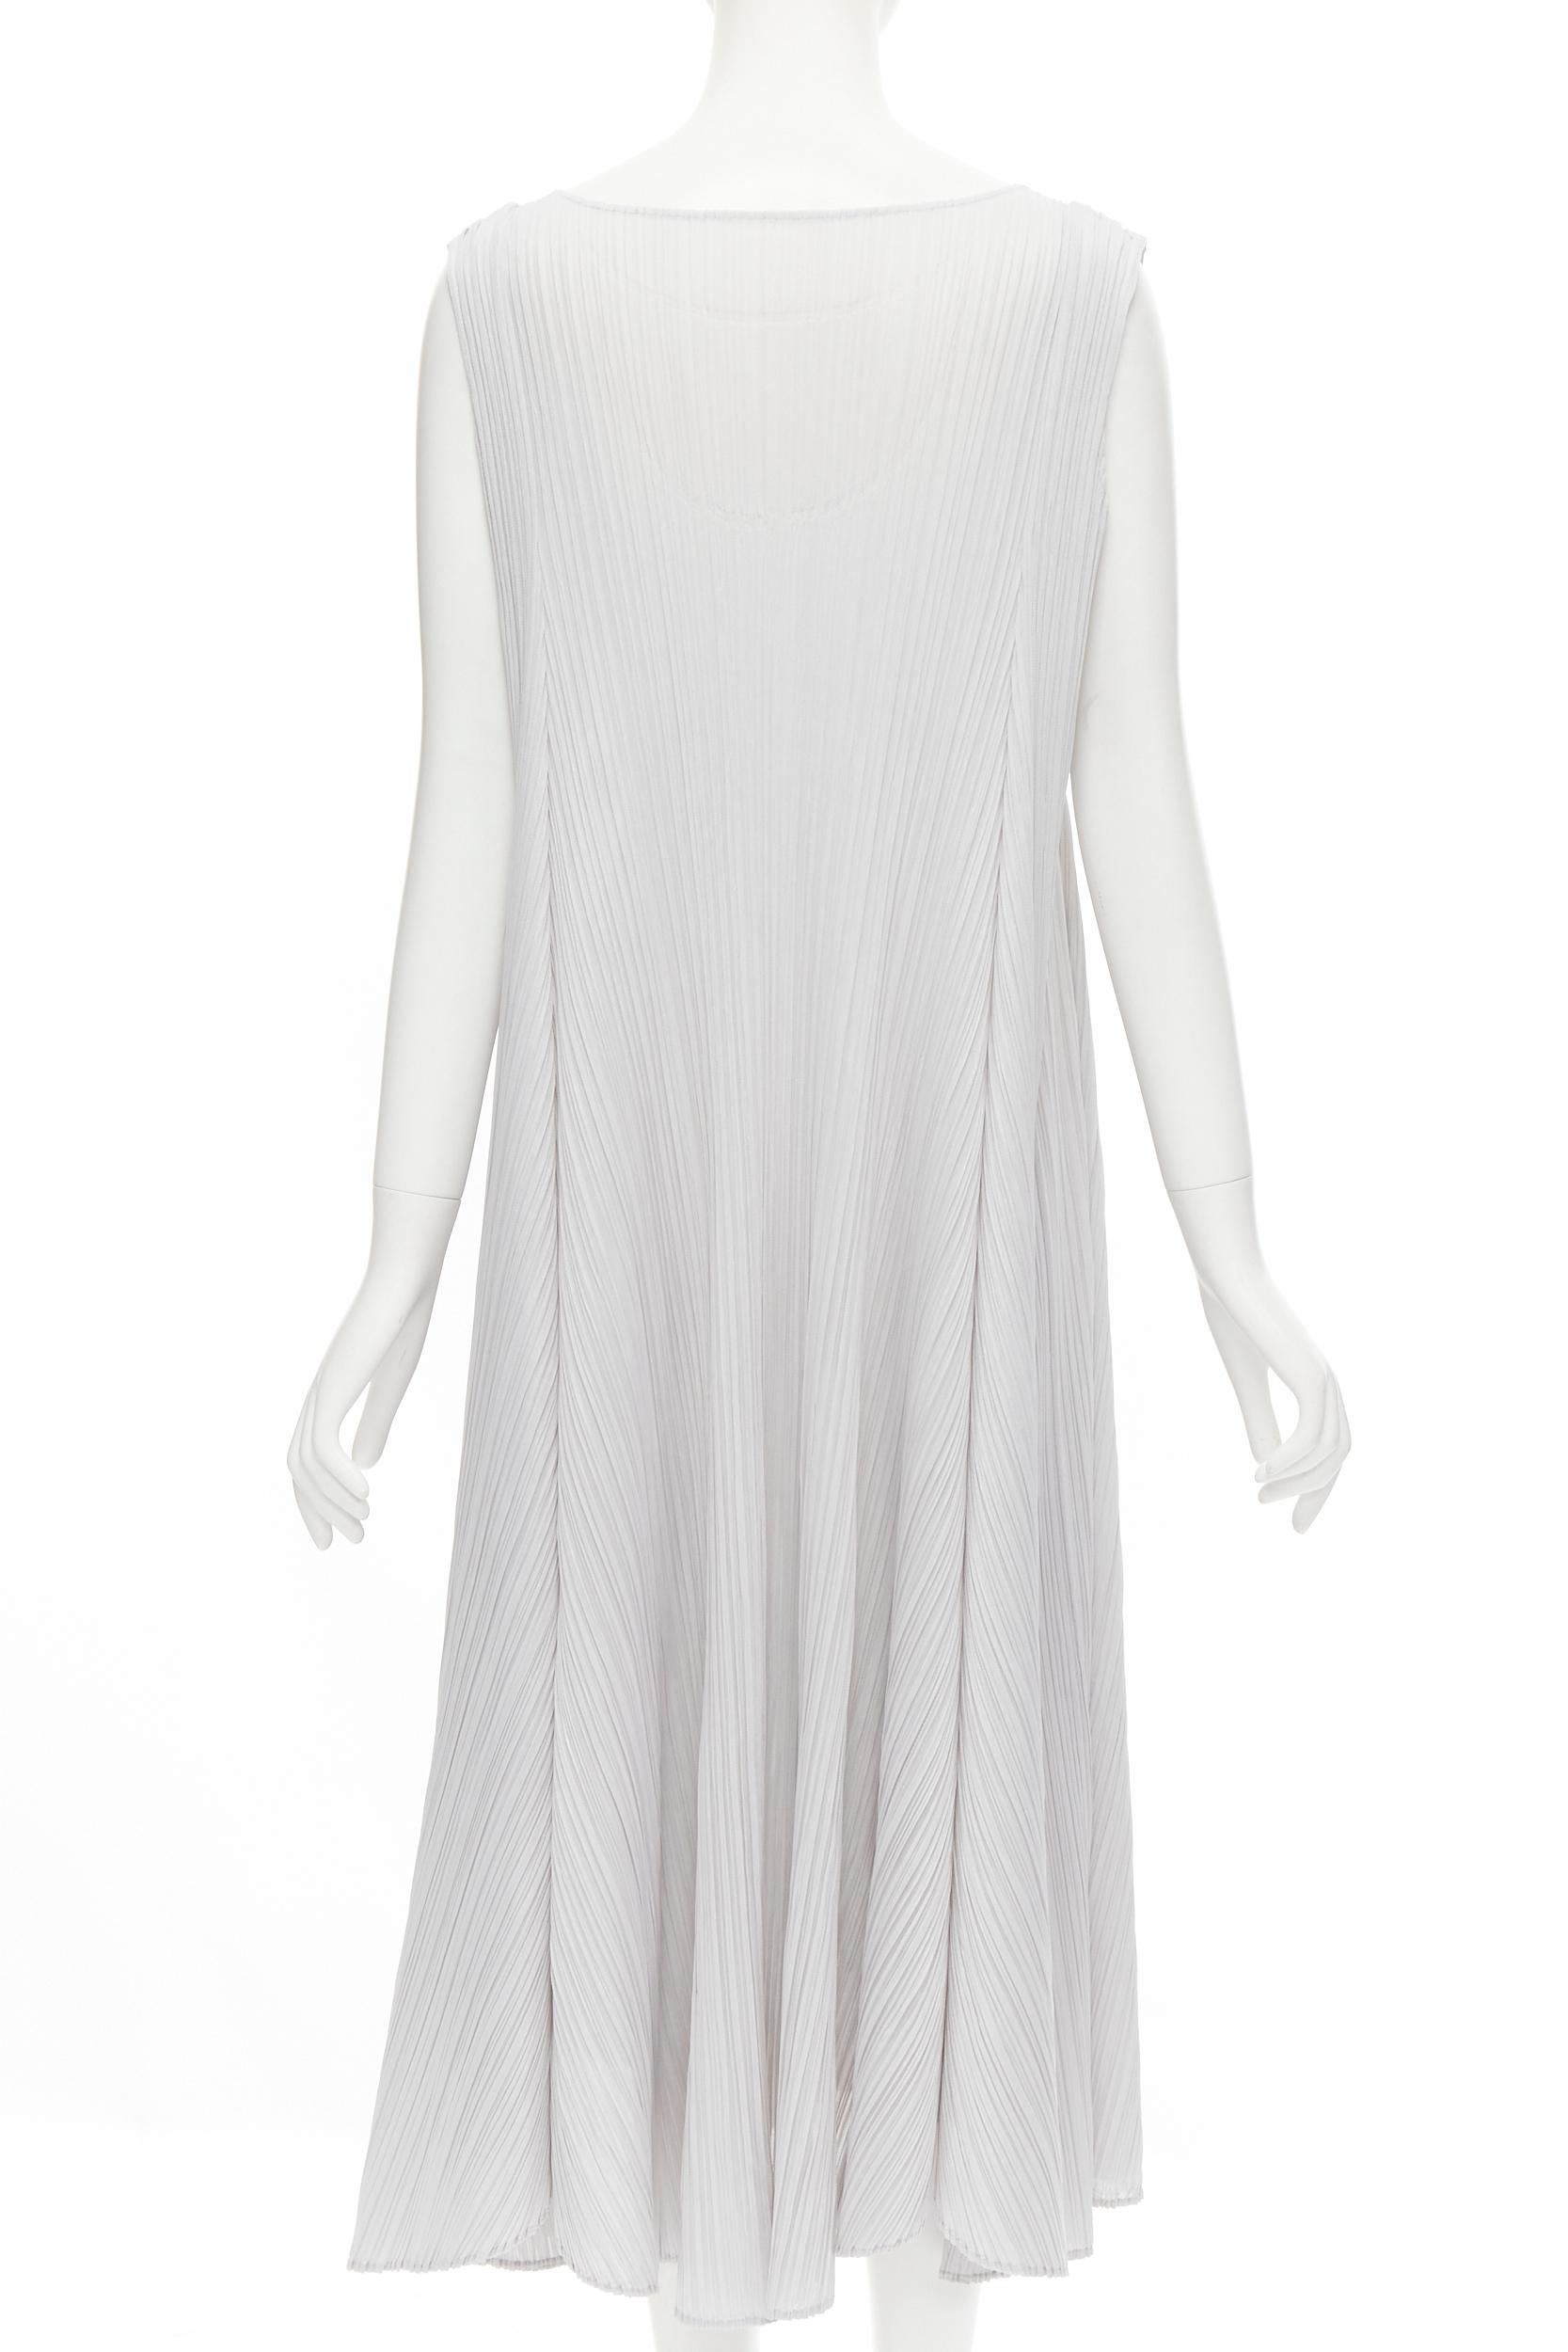 issey miyake white dress